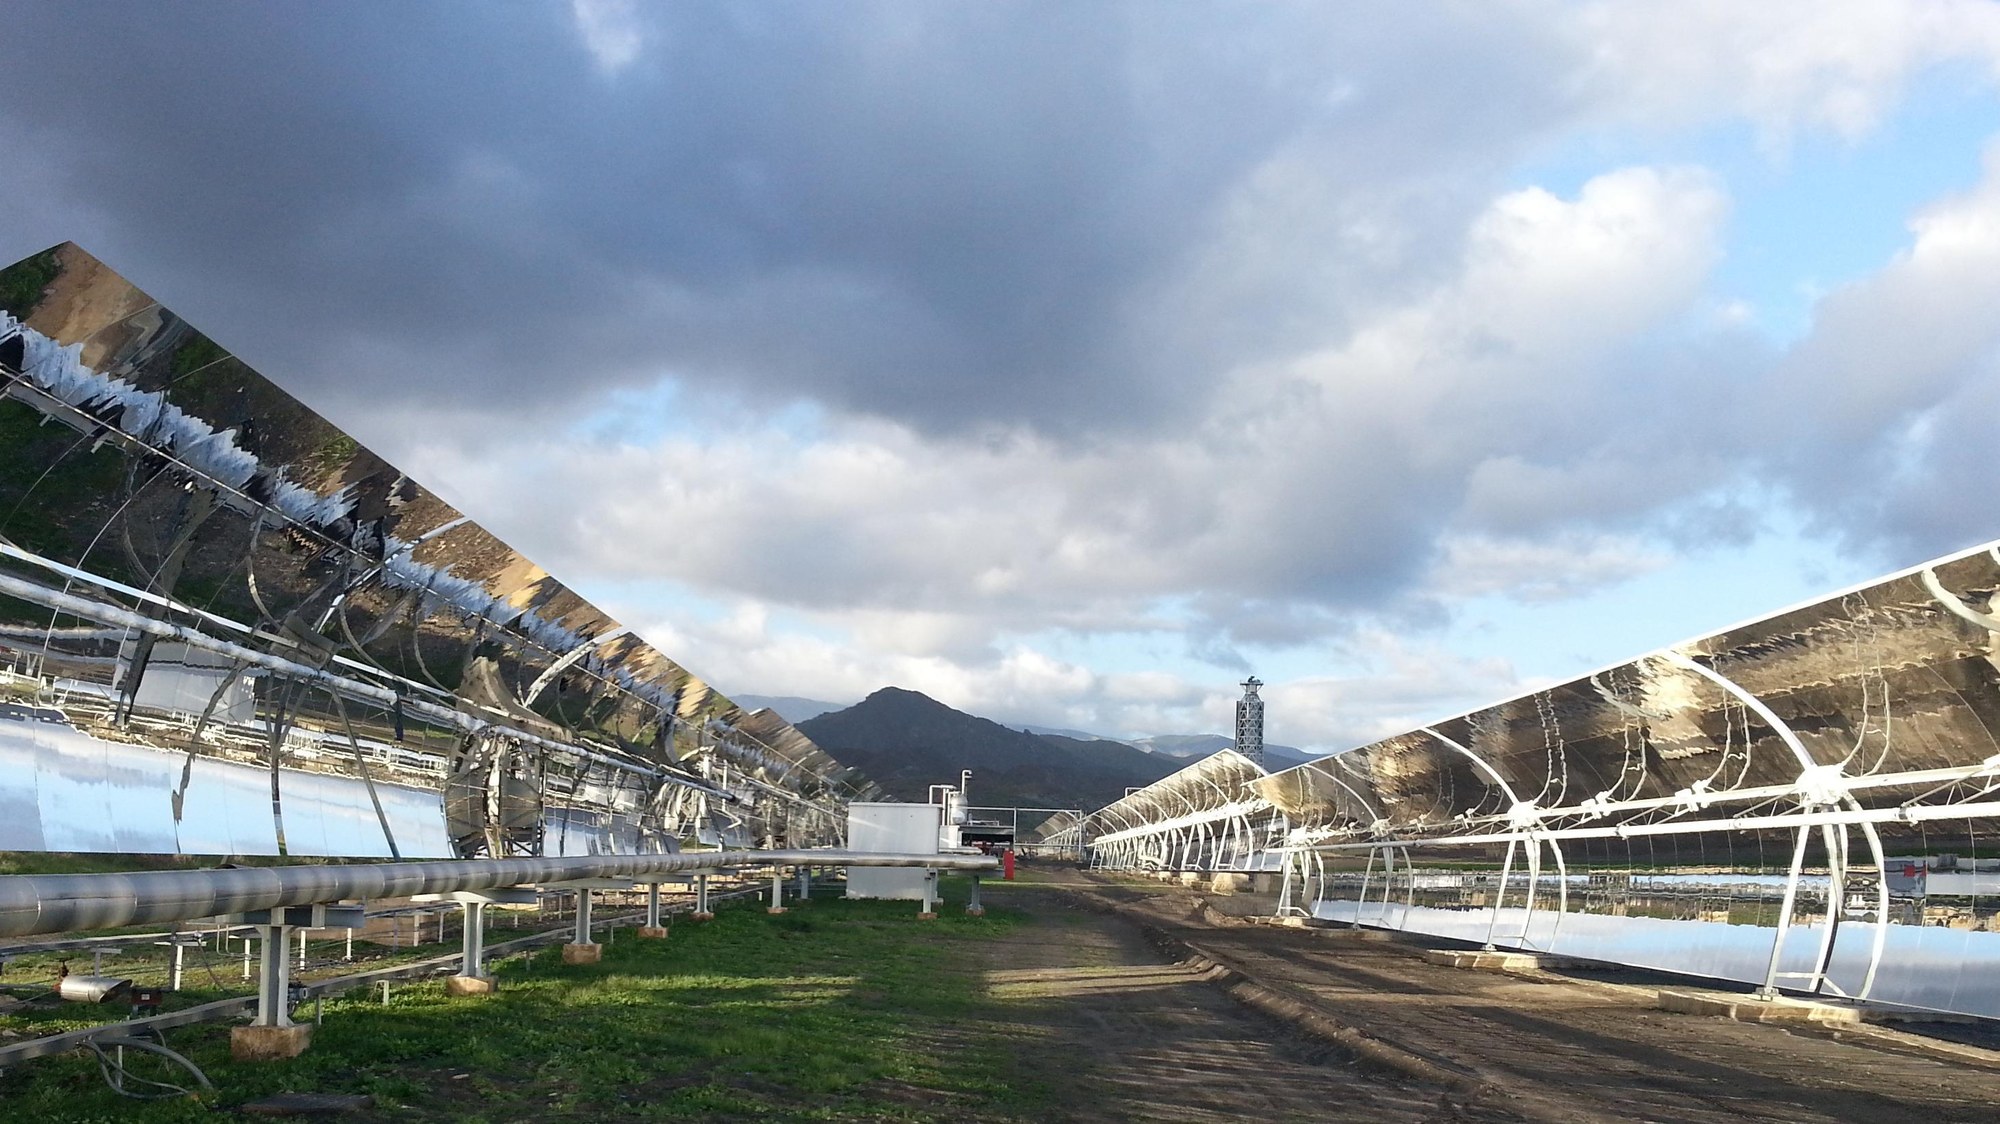 More efficient solar power plants